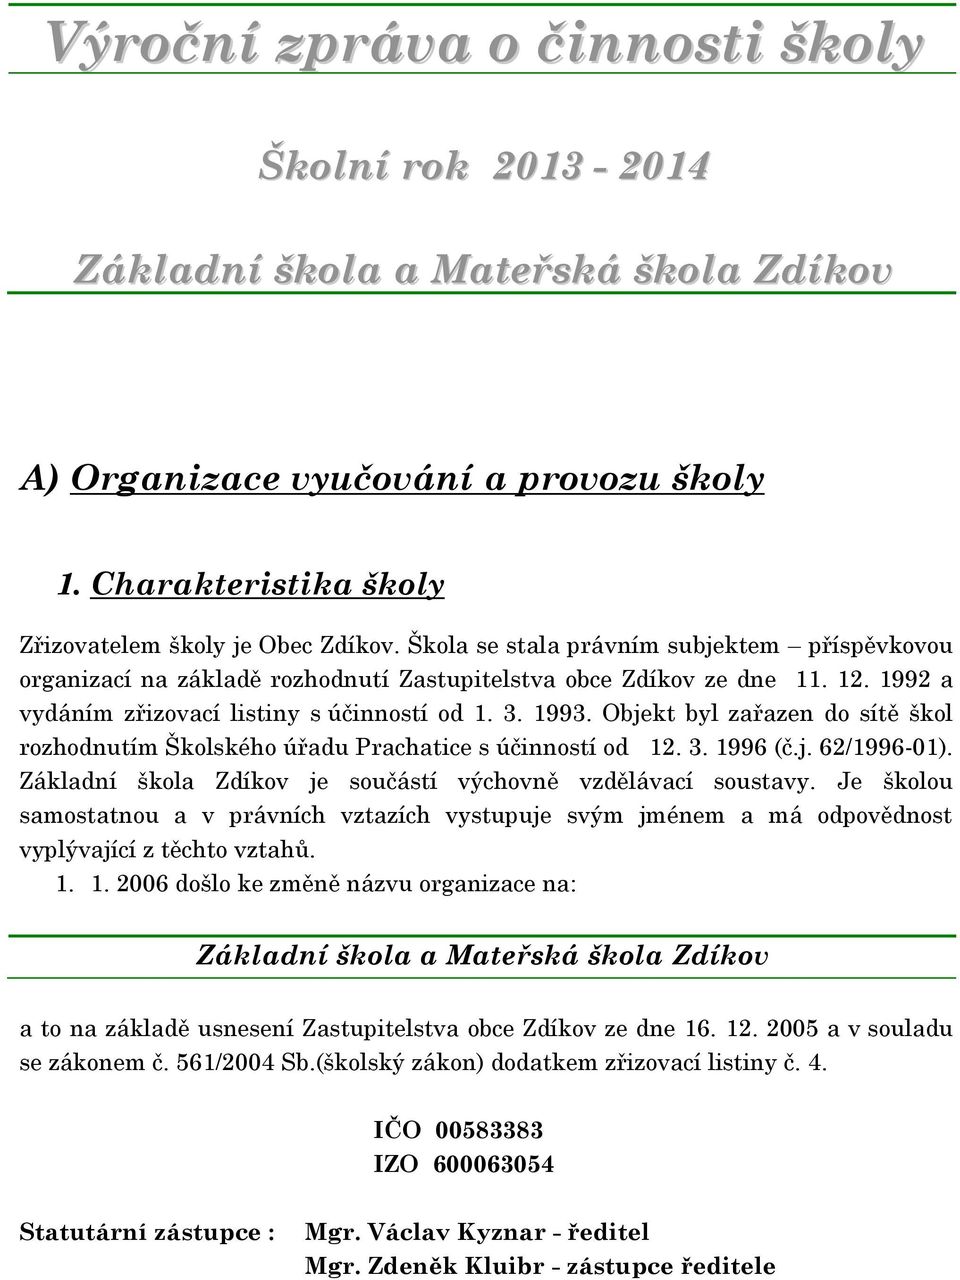 Objekt byl zařazen do sítě škol rozhodnutím Školského úřadu Prachatice s účinností od 12. 3. 1996 (č.j. 62/1996-01). Základní škola Zdíkov je součástí výchovně vzdělávací soustavy.